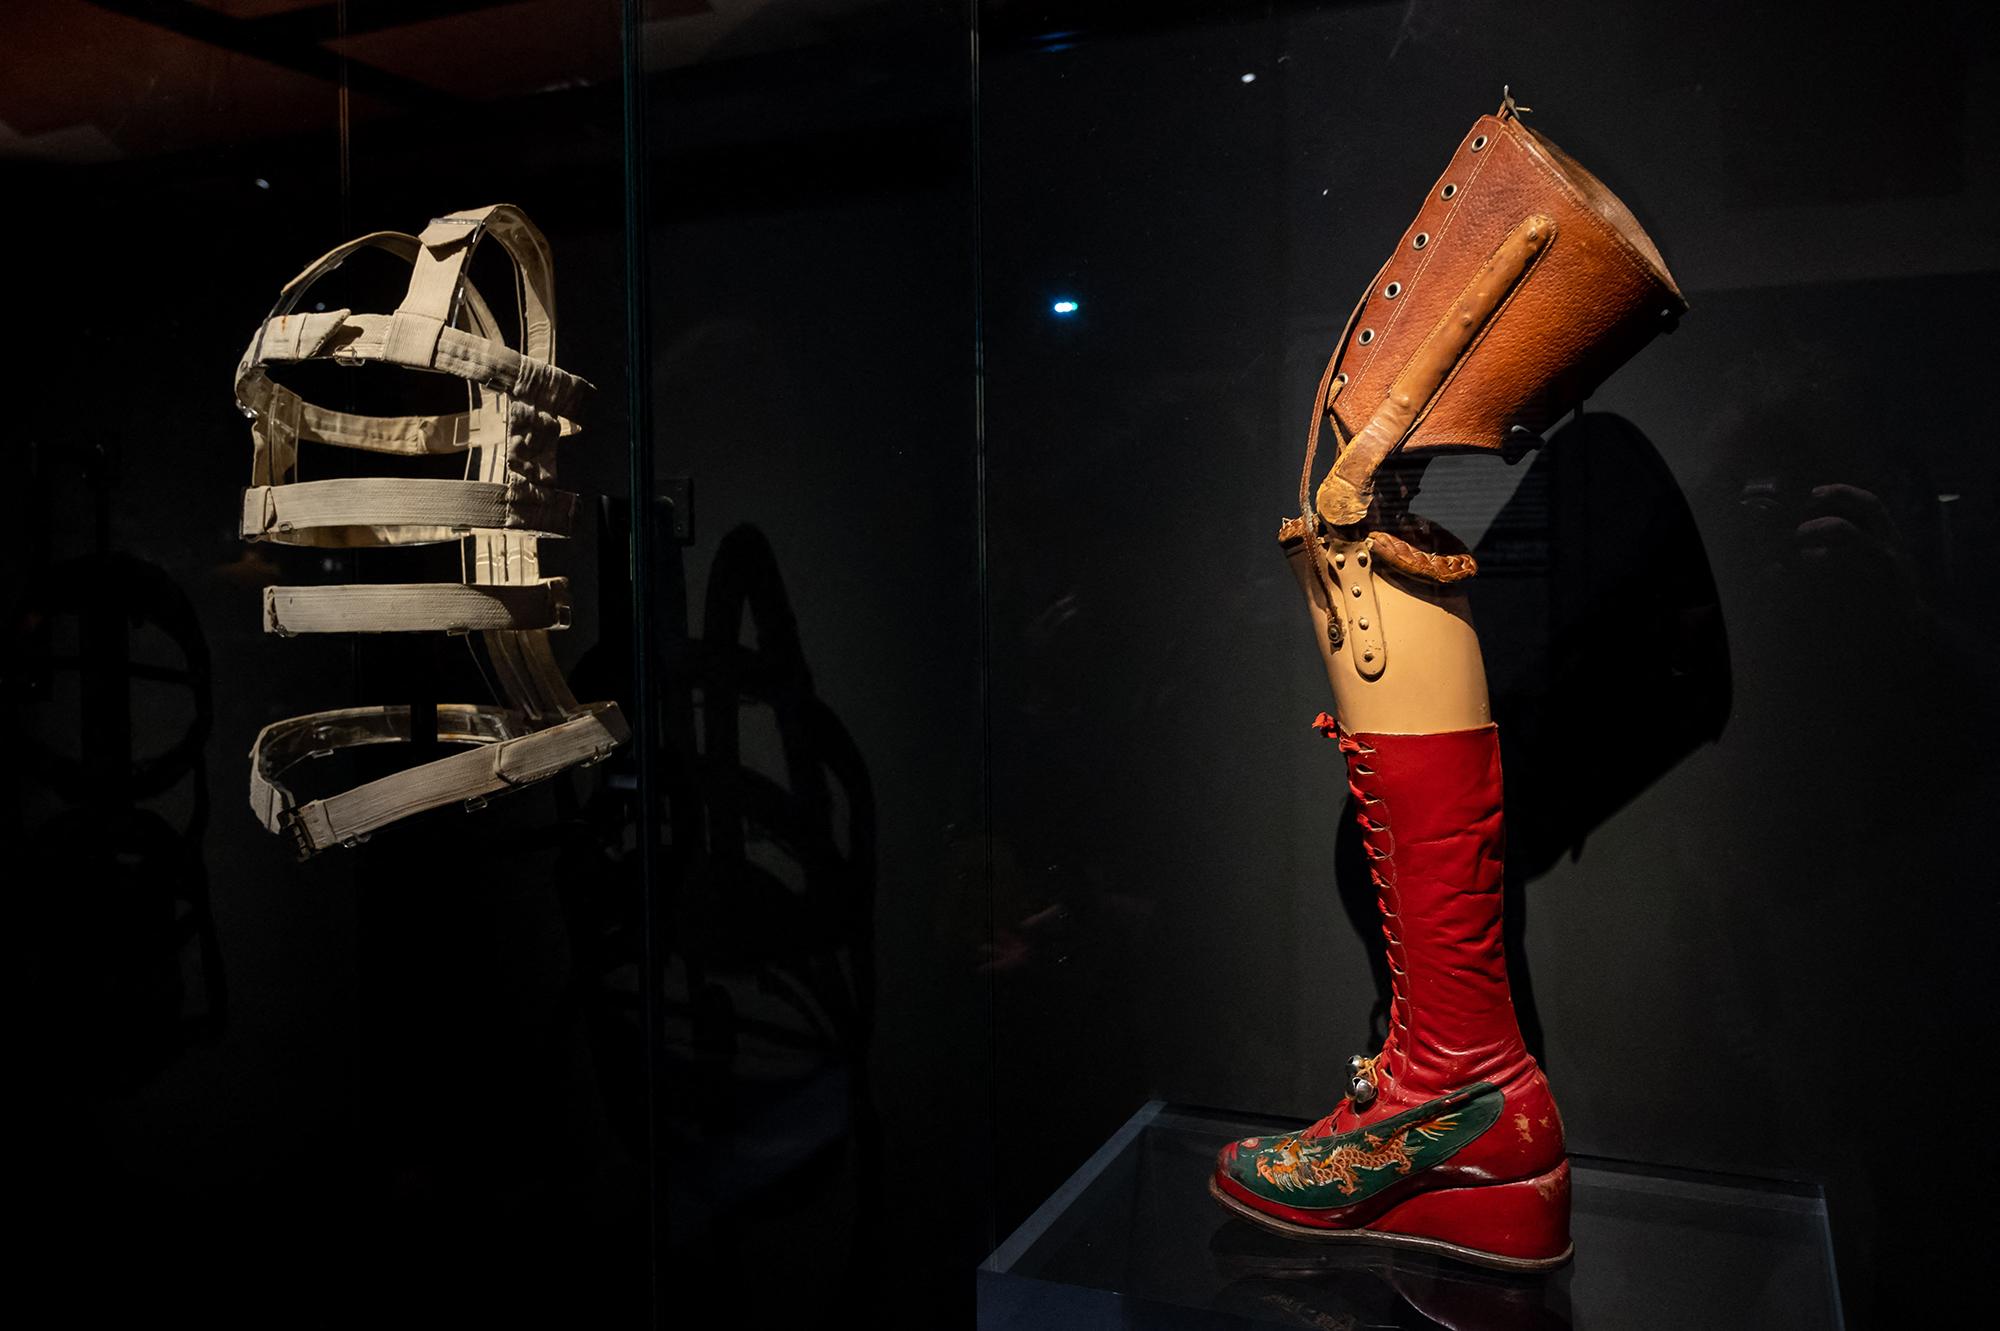 Une photo d'un corset et d'une prothèse de l'exposition "Frida Kahlo, au-delà des apparences" à Paris. [AFP - Riccardo Milani / Hans Lucas]